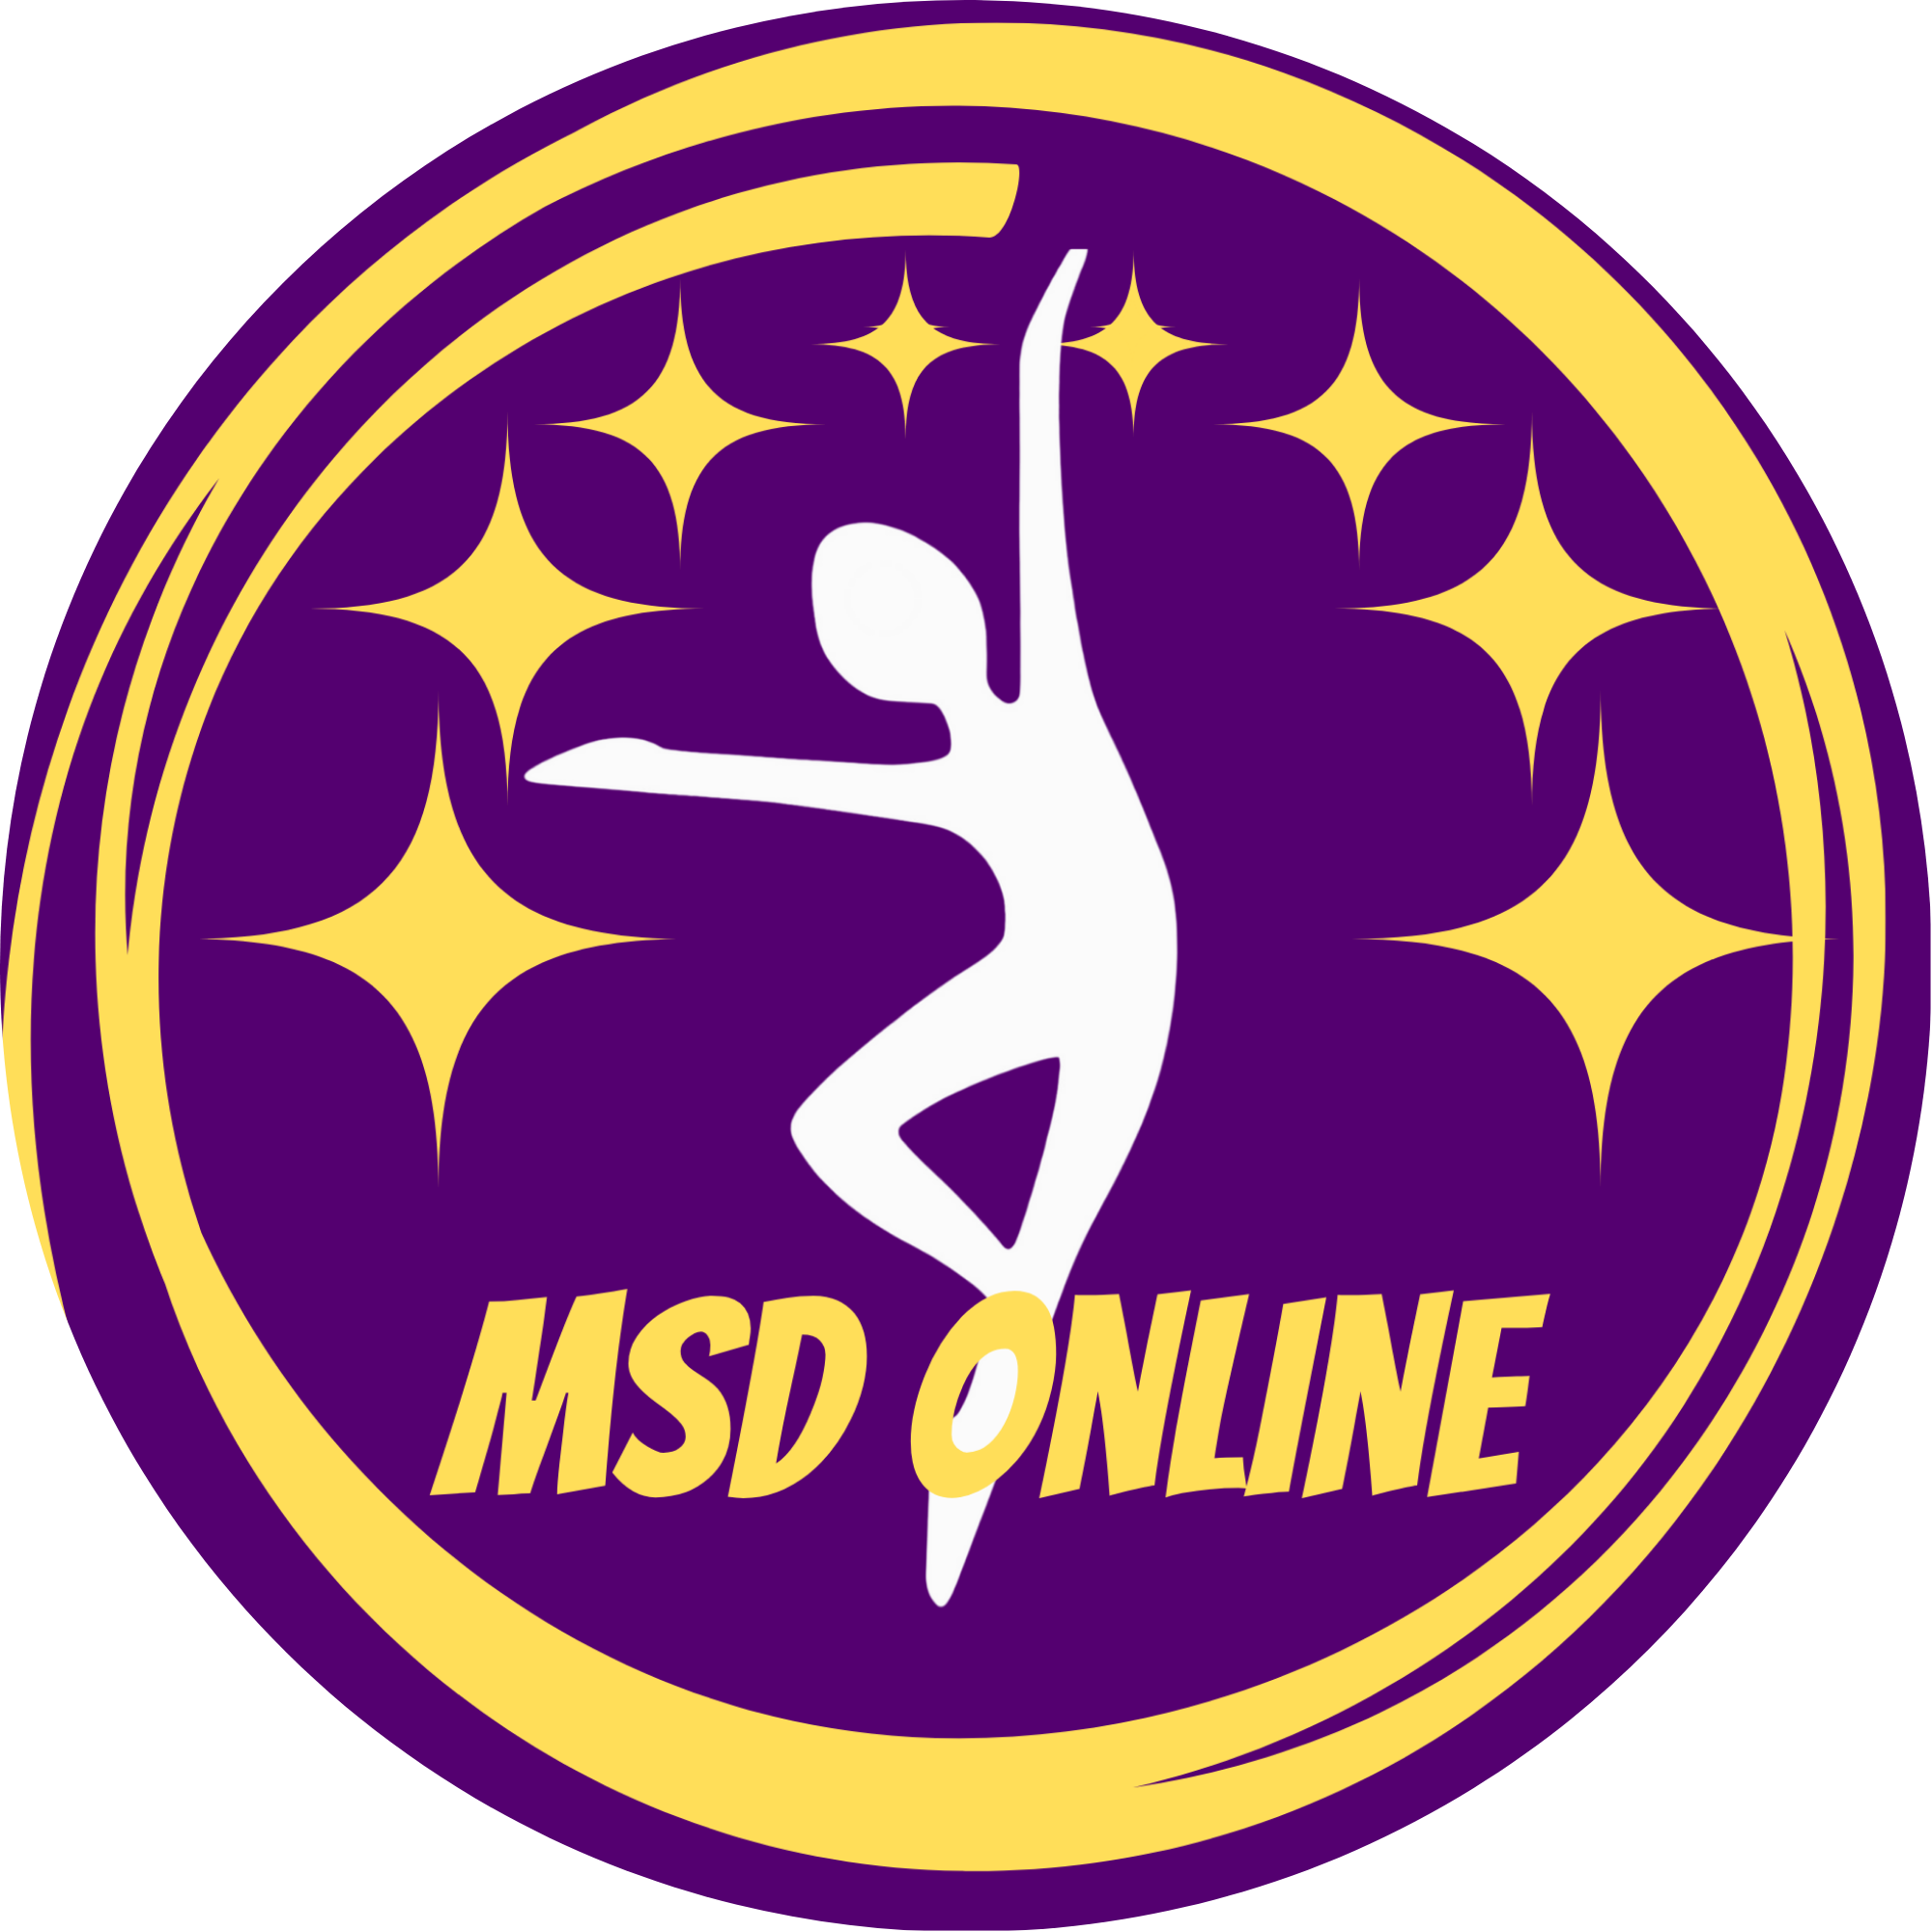 MSD Online Classes for Kids logo